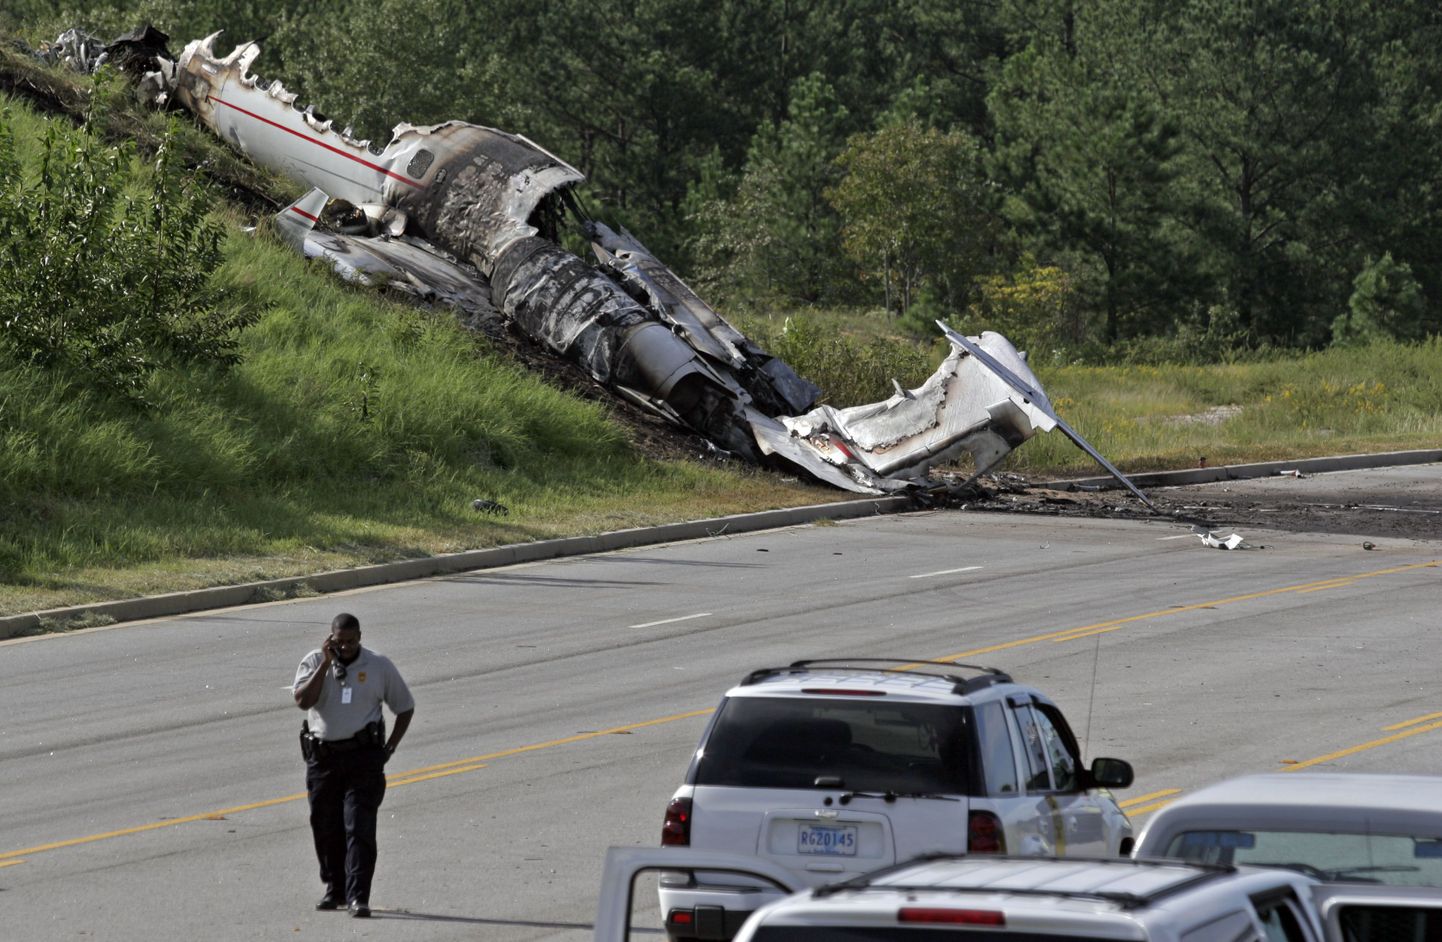 20. septembril kukkus Columbia lennujaama lähedal alla lennuk kuue inimesega, kellest neli hukkus. Travis Barker ja Adam Goldstein said tõsiseid põletushaavu.